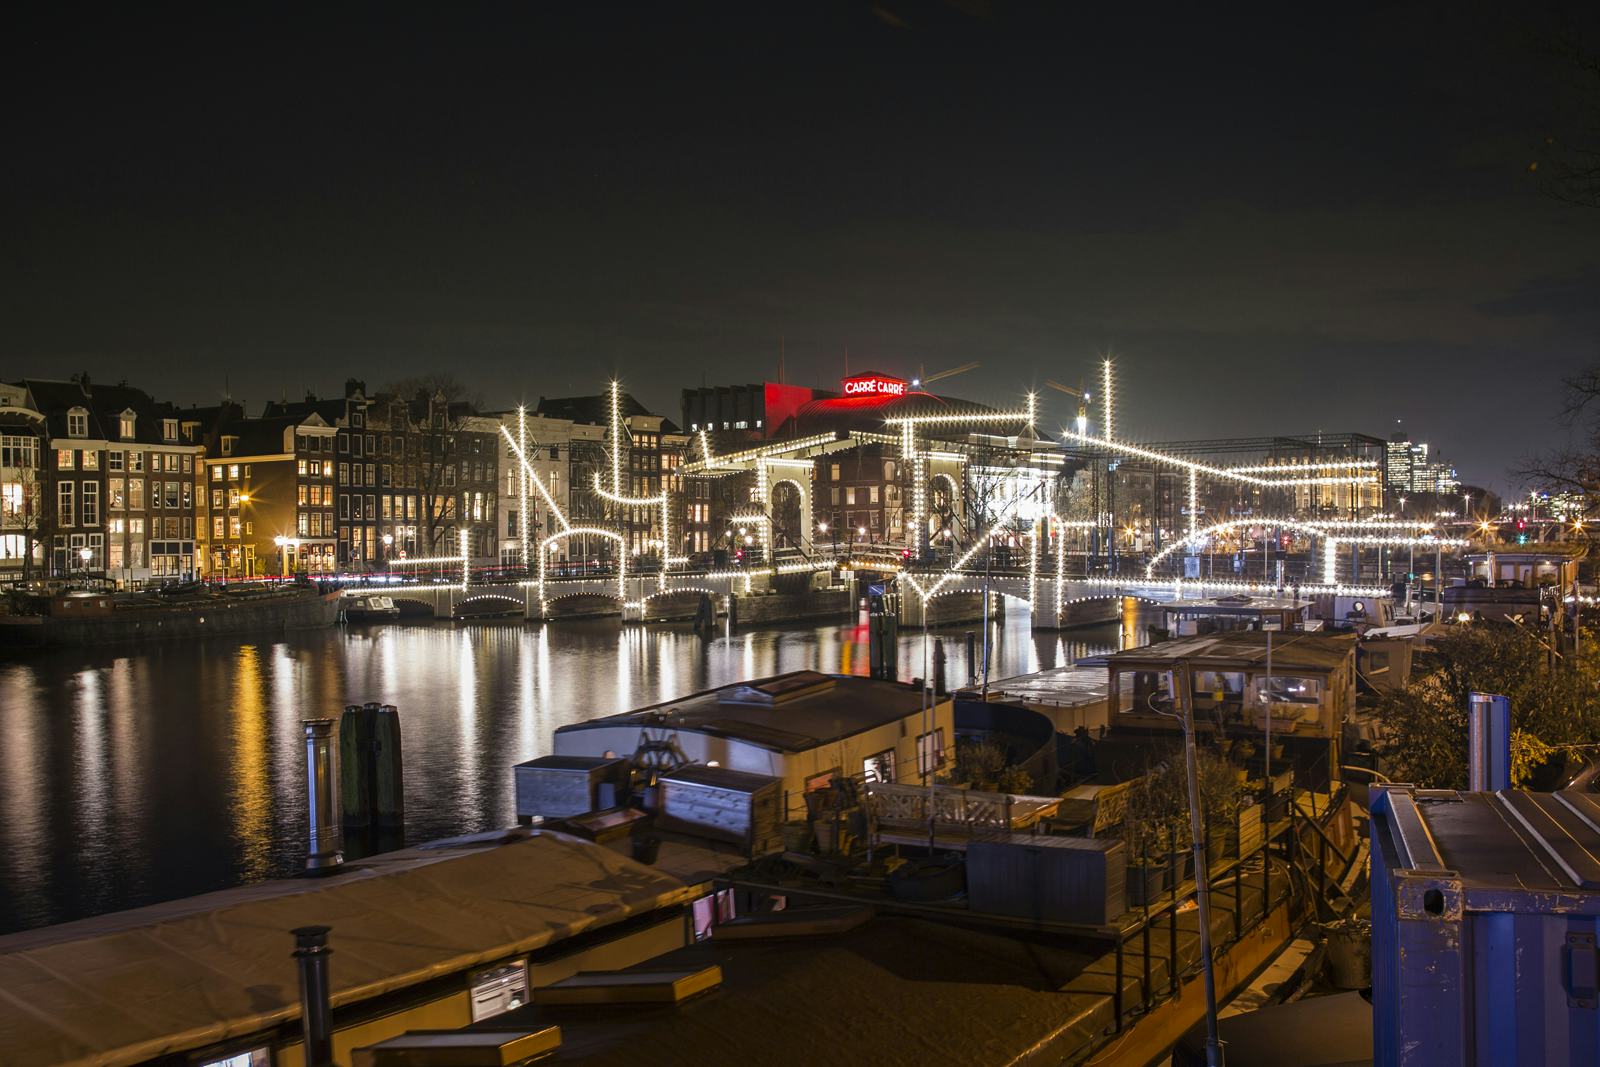 Nacht-Tekening door Krijn de Koning. Amsterdam Light Festival 2019. Beeld Janus van den Eijnden